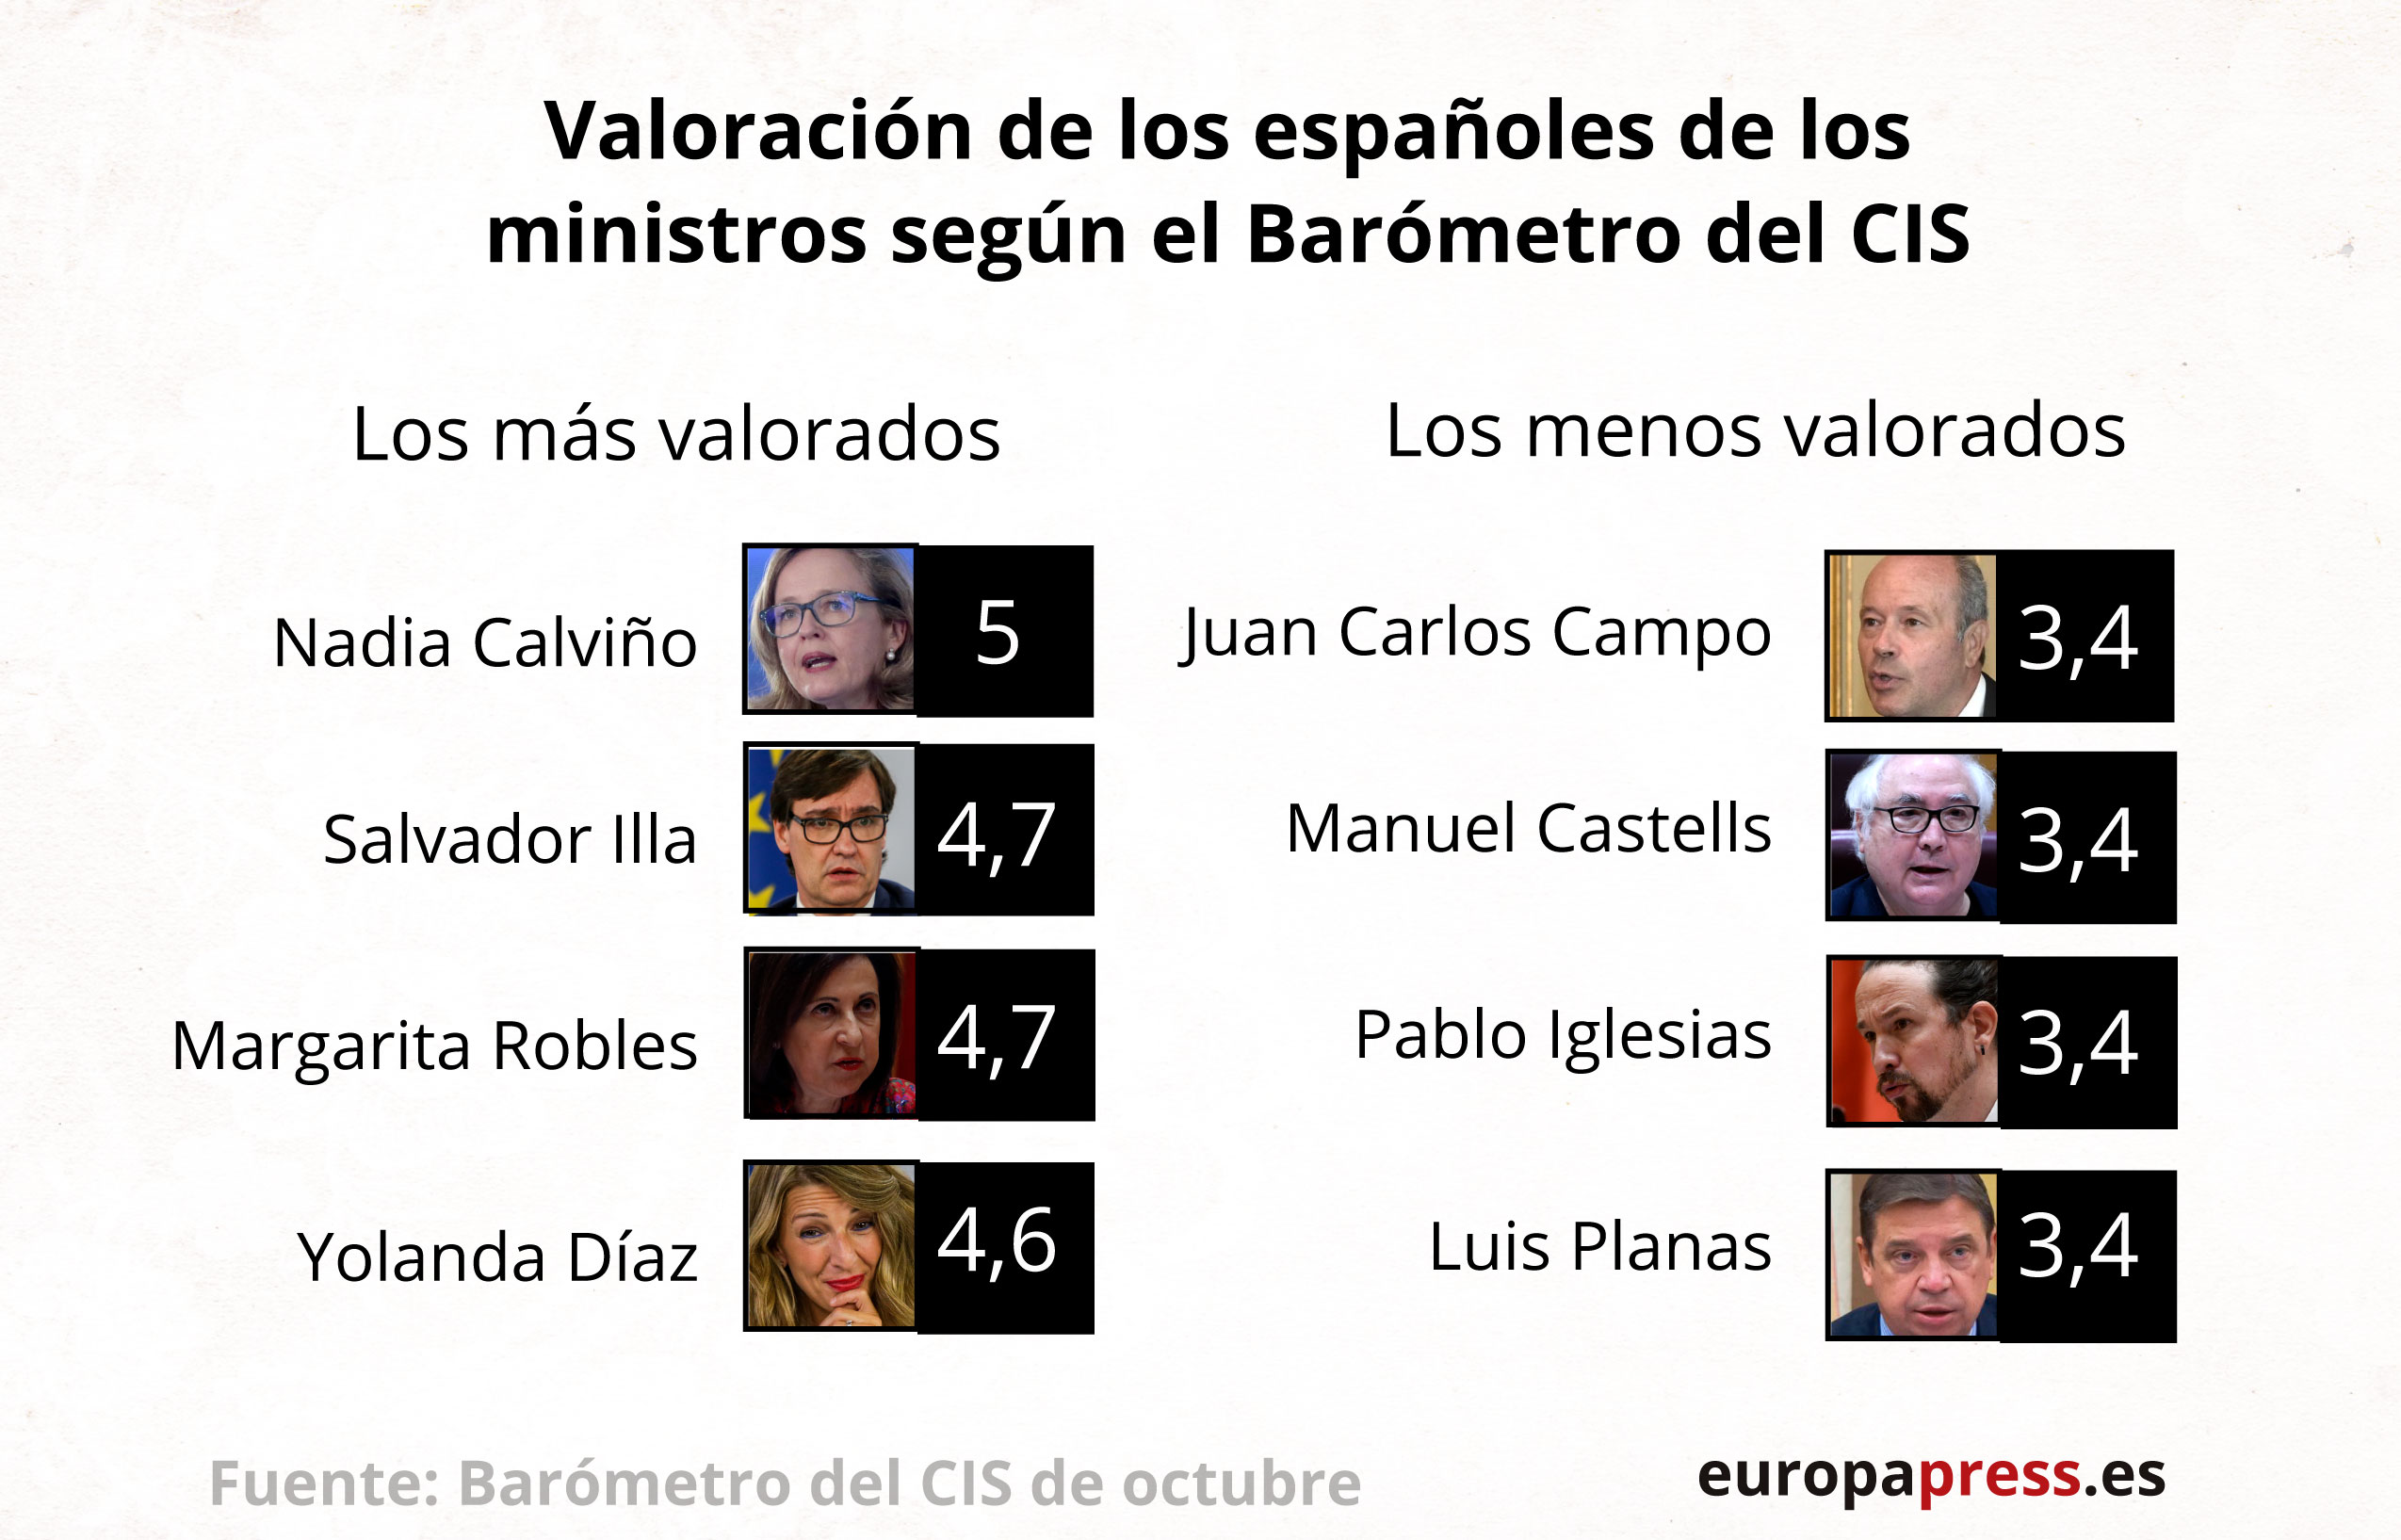 Valoración de los ministros según el CIS